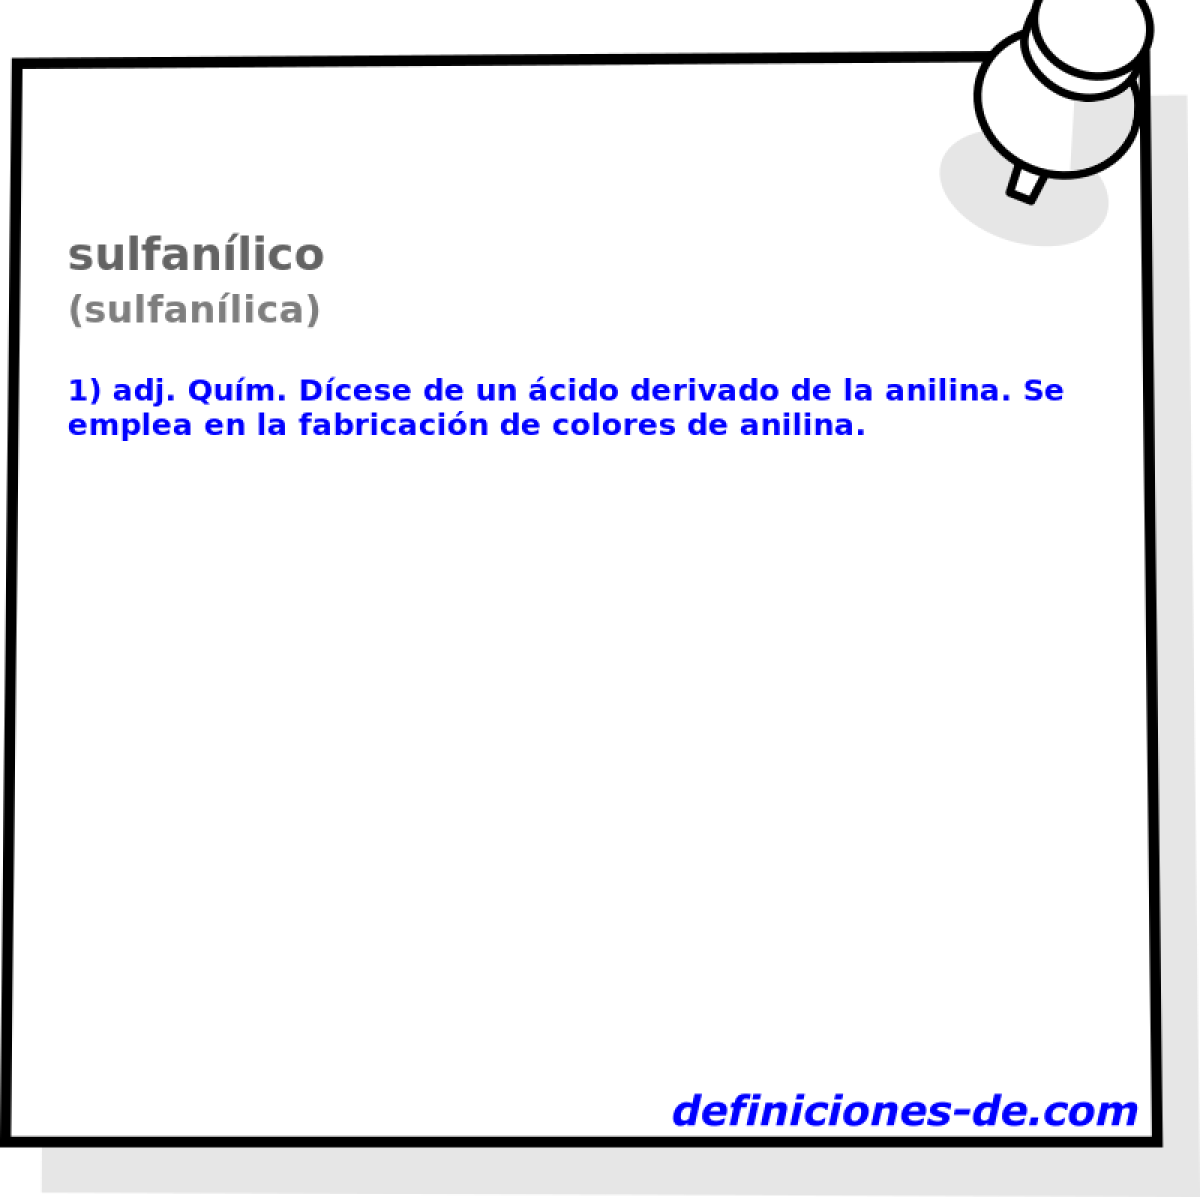 sulfanlico (sulfanlica)